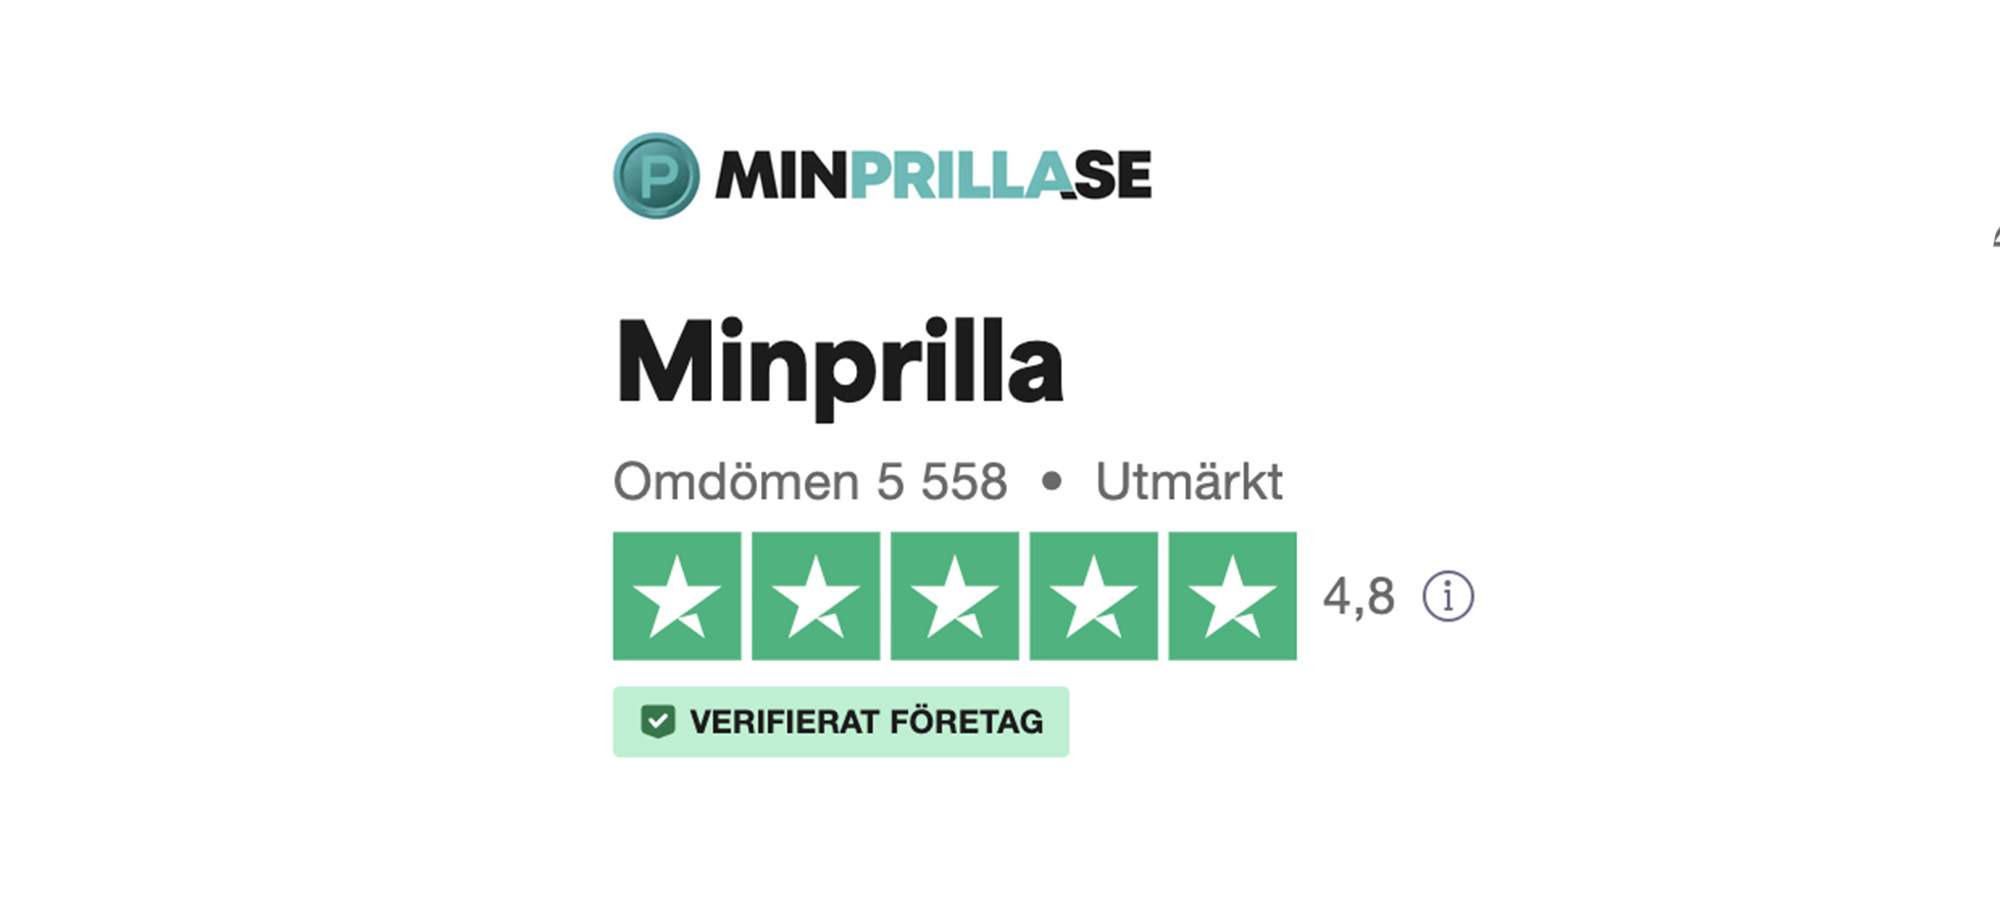 MinPrilla överlägsna enligt Trustpilot – bäst betyg och flest omdömen